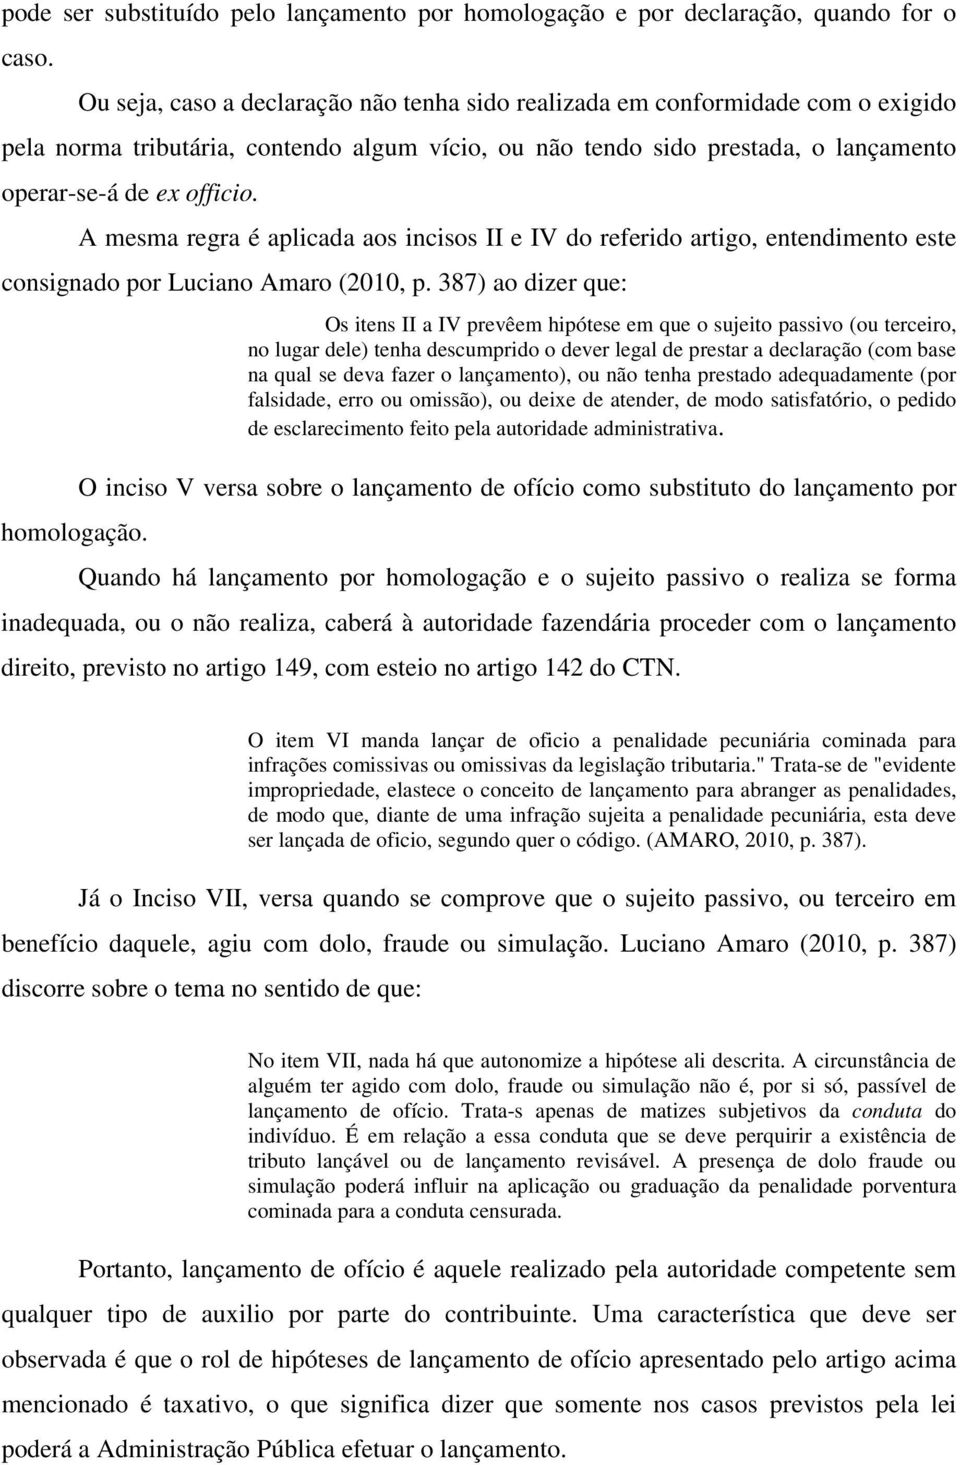 A mesma regra é aplicada aos incisos II e IV do referido artigo, entendimento este consignado por Luciano Amaro (2010, p. 387) ao dizer que: homologação.